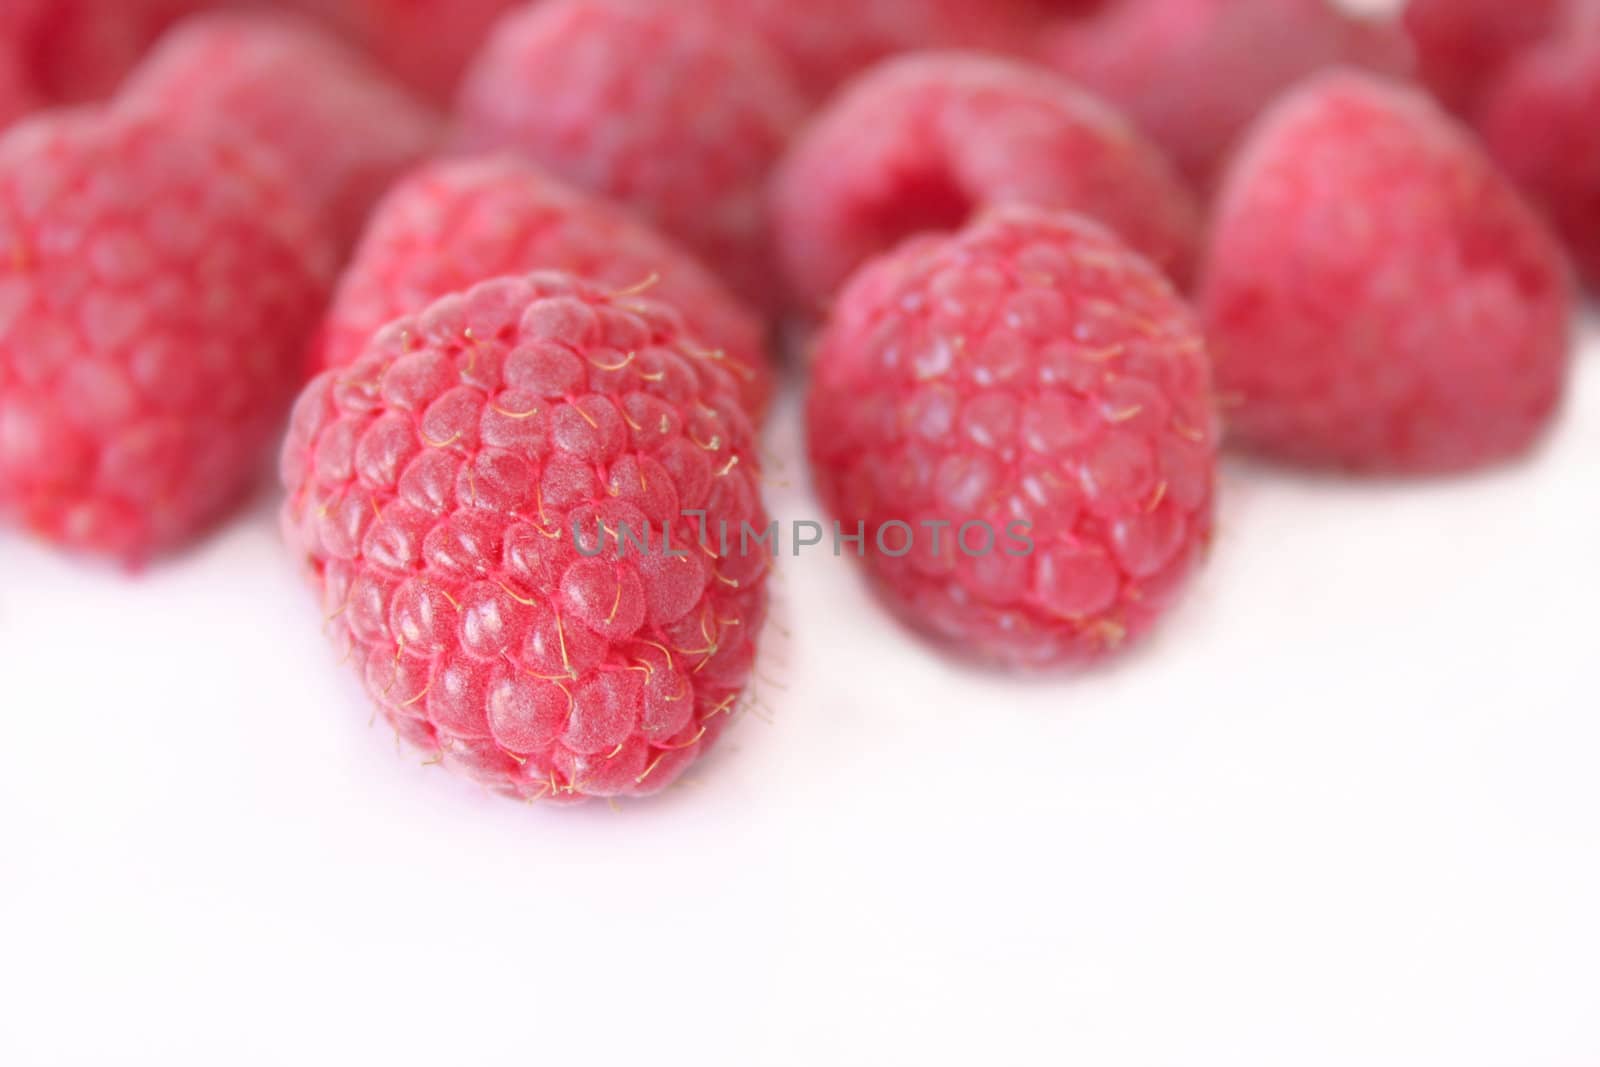 Raspberries by thephotoguy